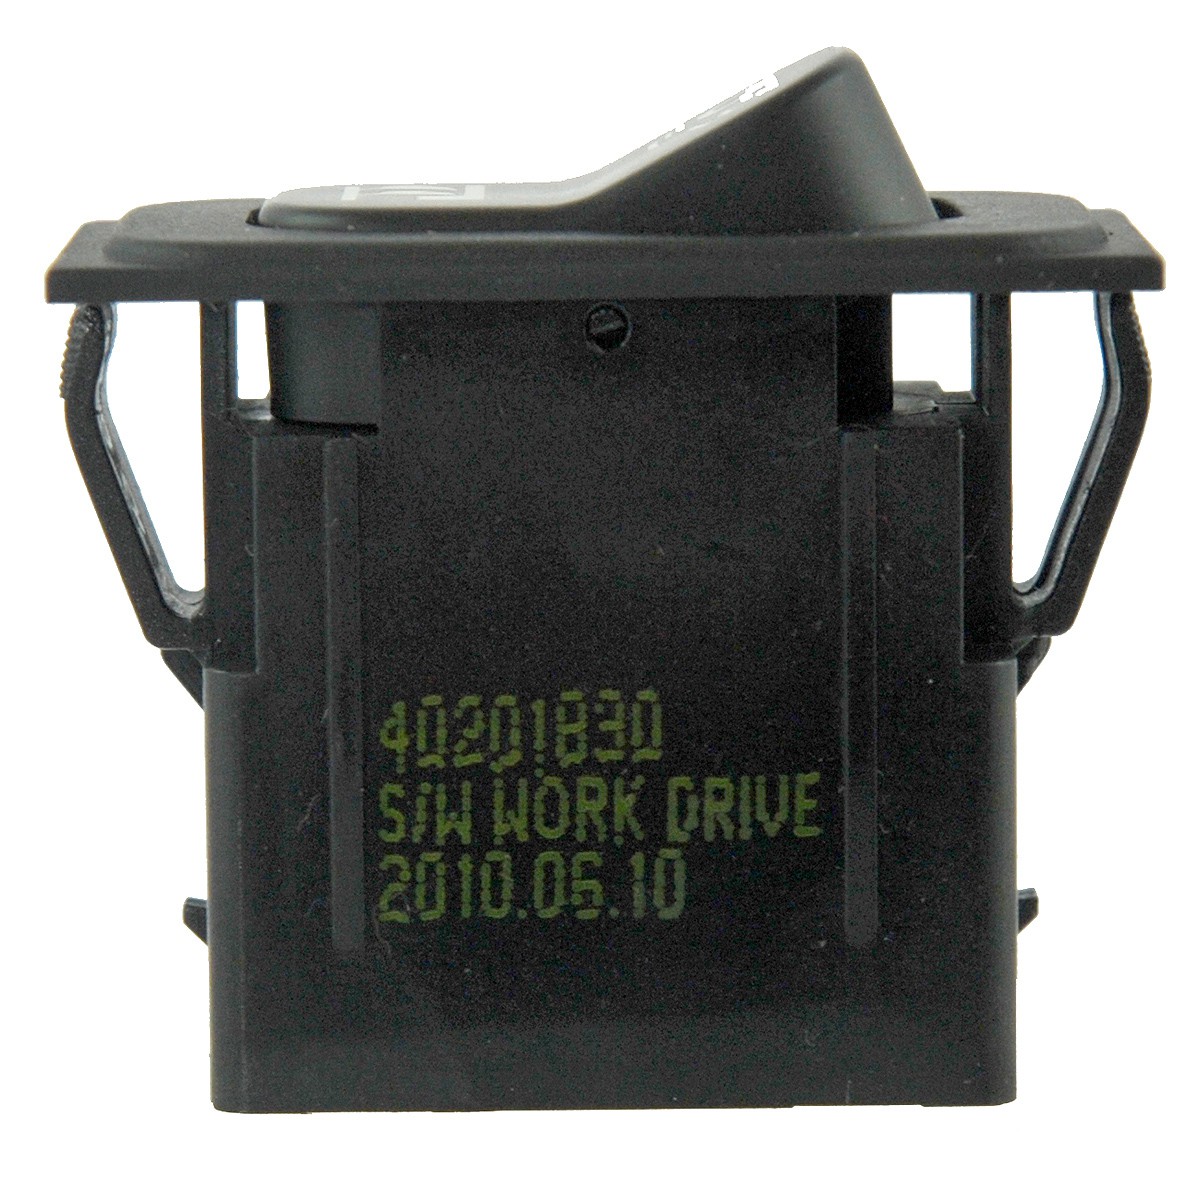 Interrupteur pour phare de travail / TRG750 / 12V / LS PLUS 70